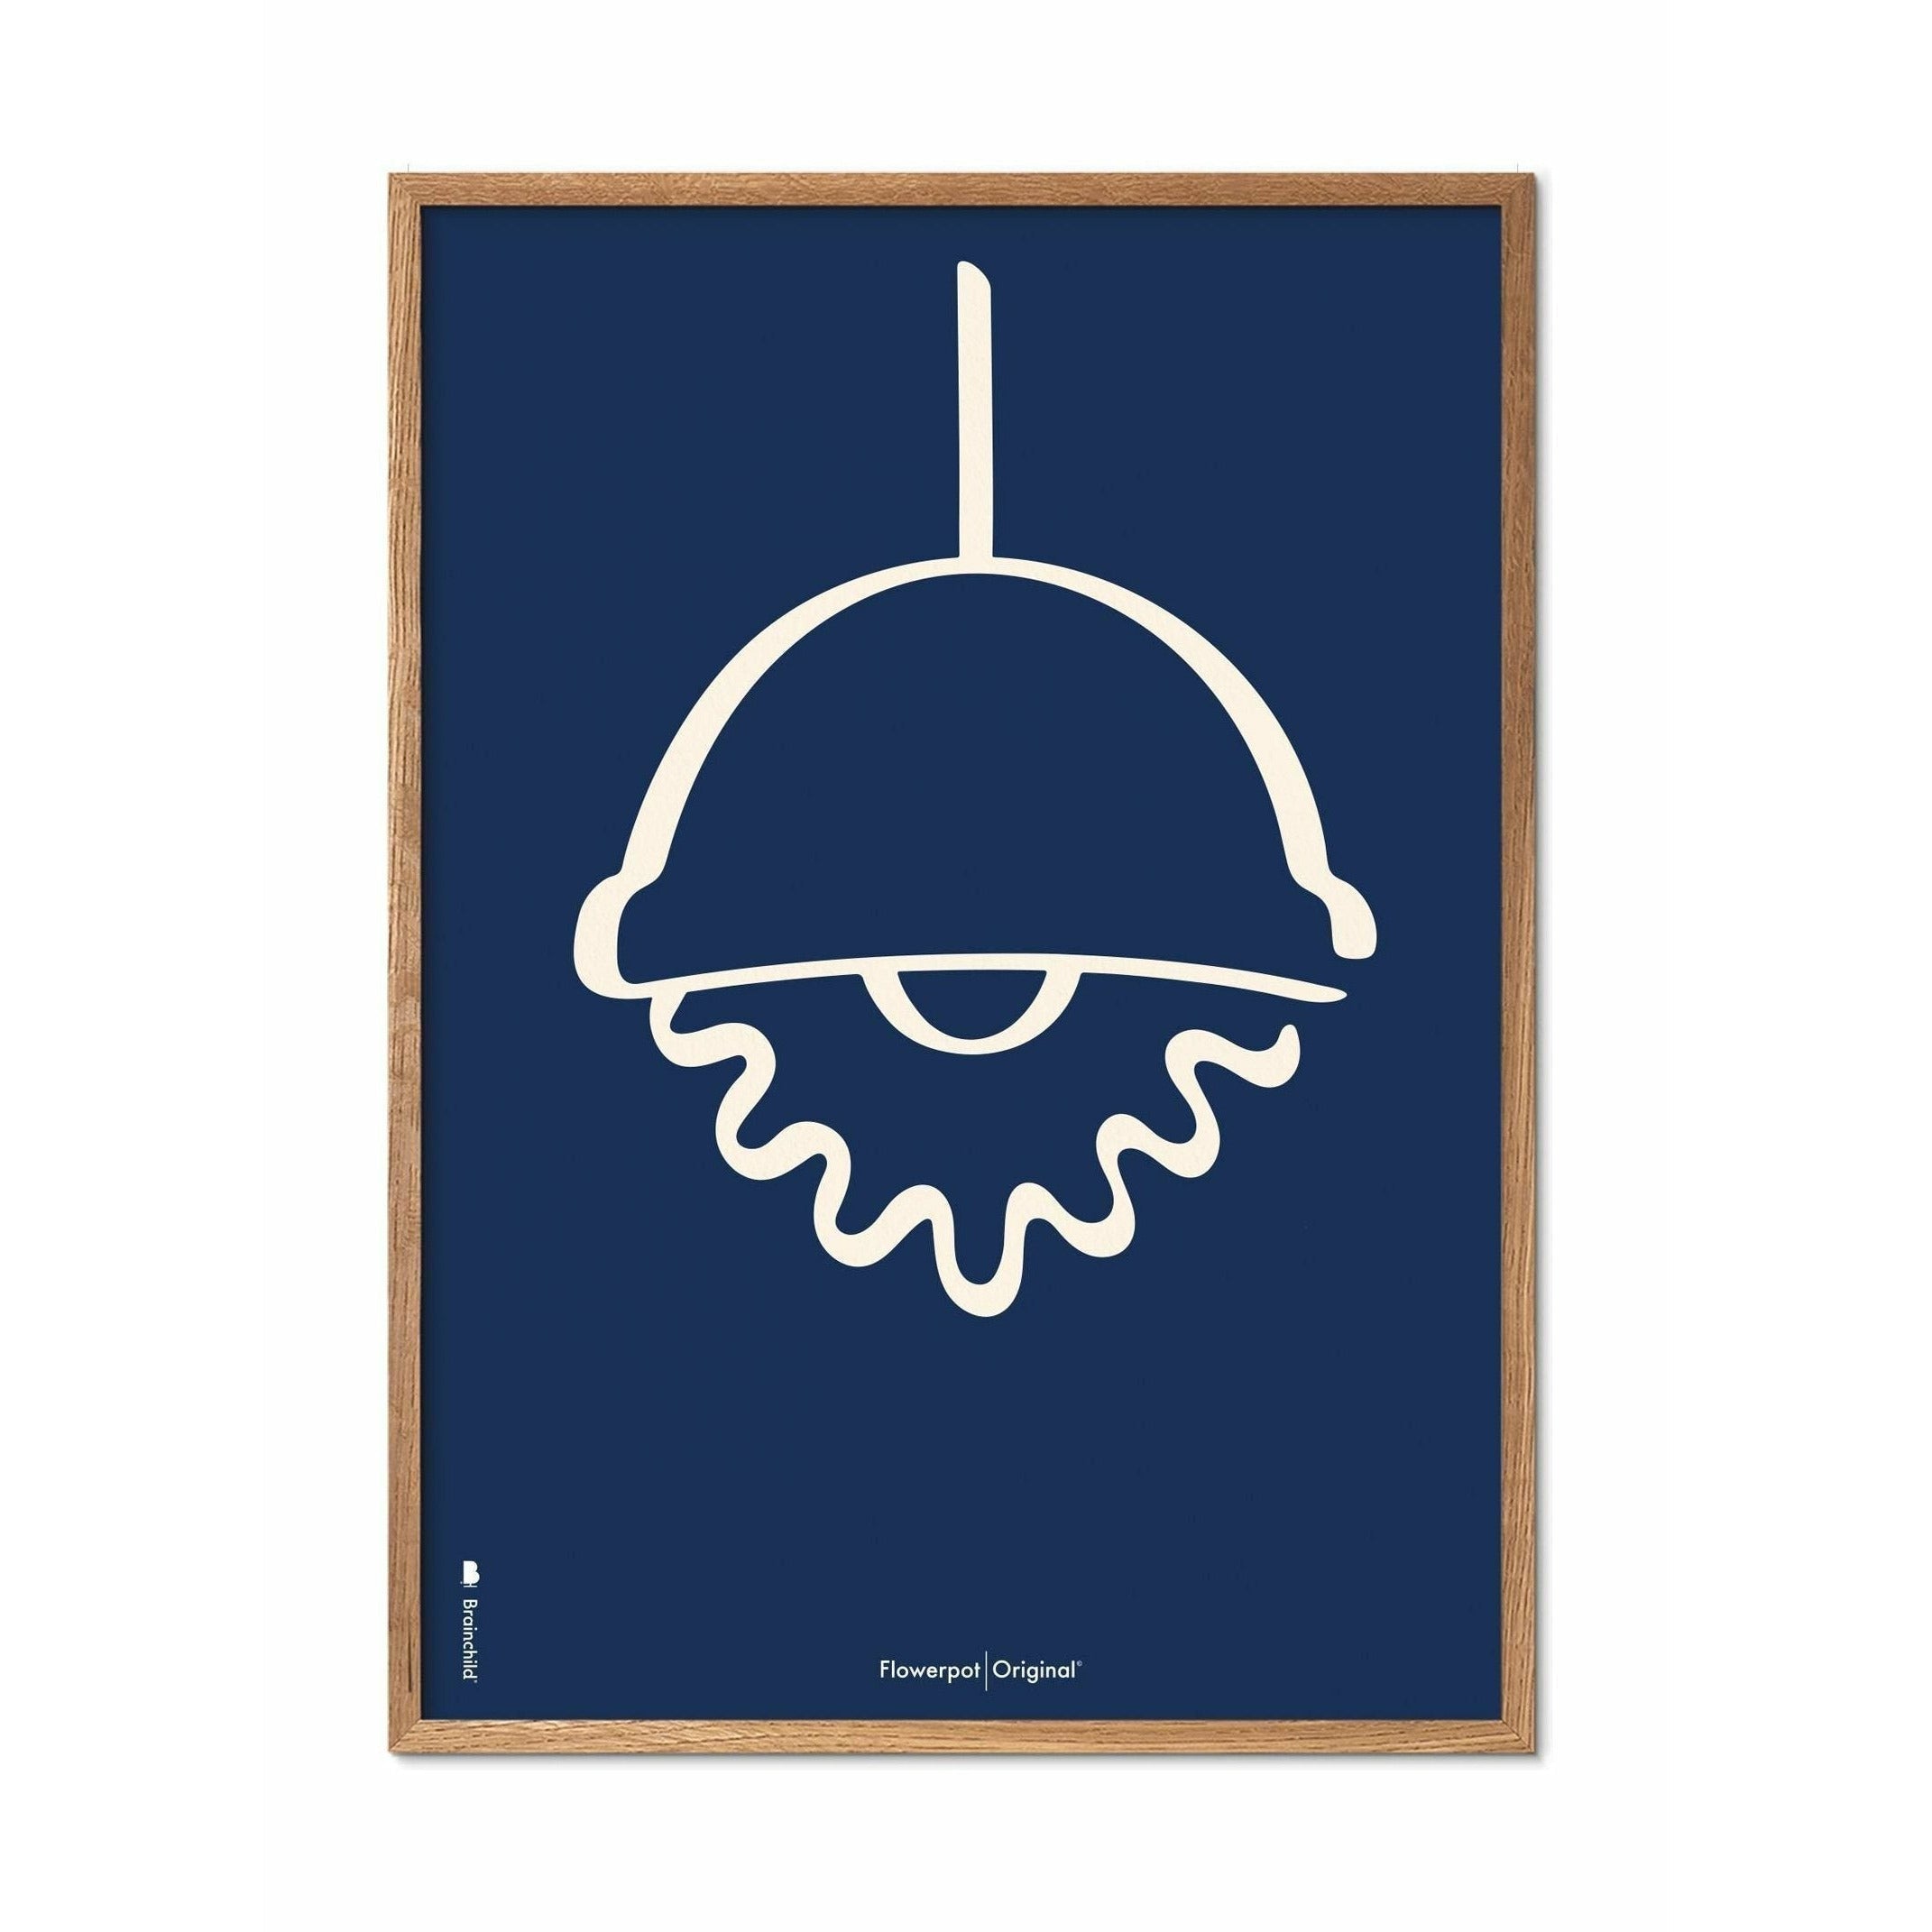 Brainchild Blumentopf Line Poster, Rahmen aus hellem Holz 50x70 Cm, blauer Hintergrund